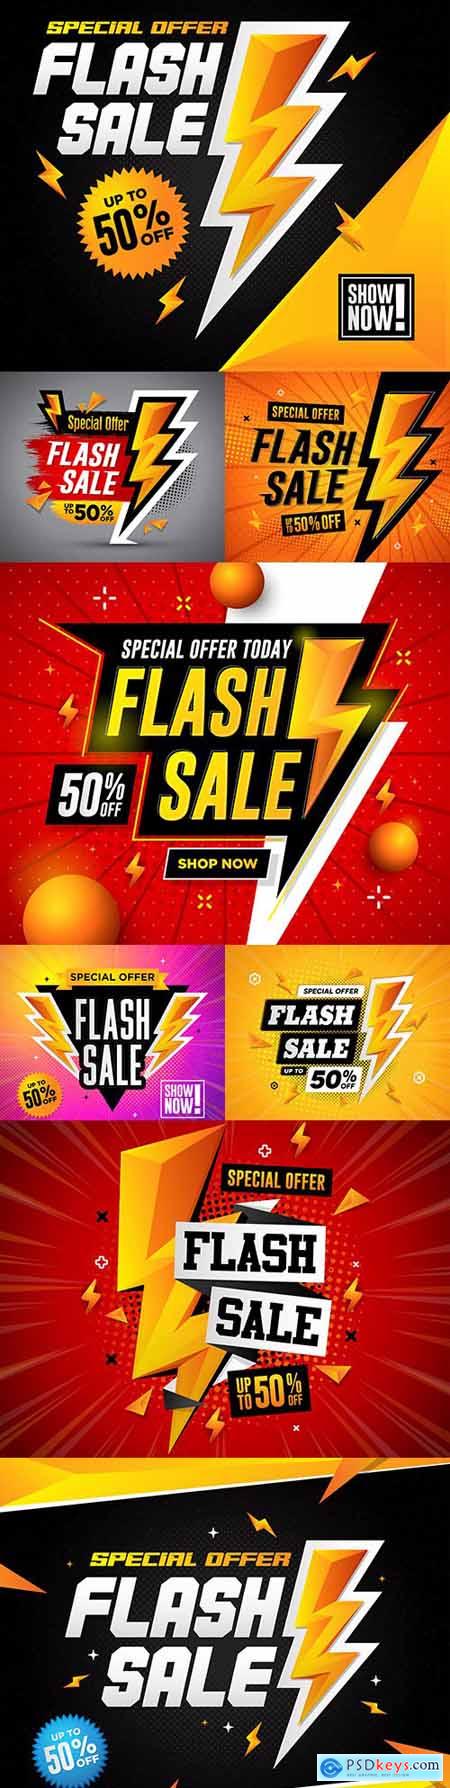 Flash sale special offer square design illustration